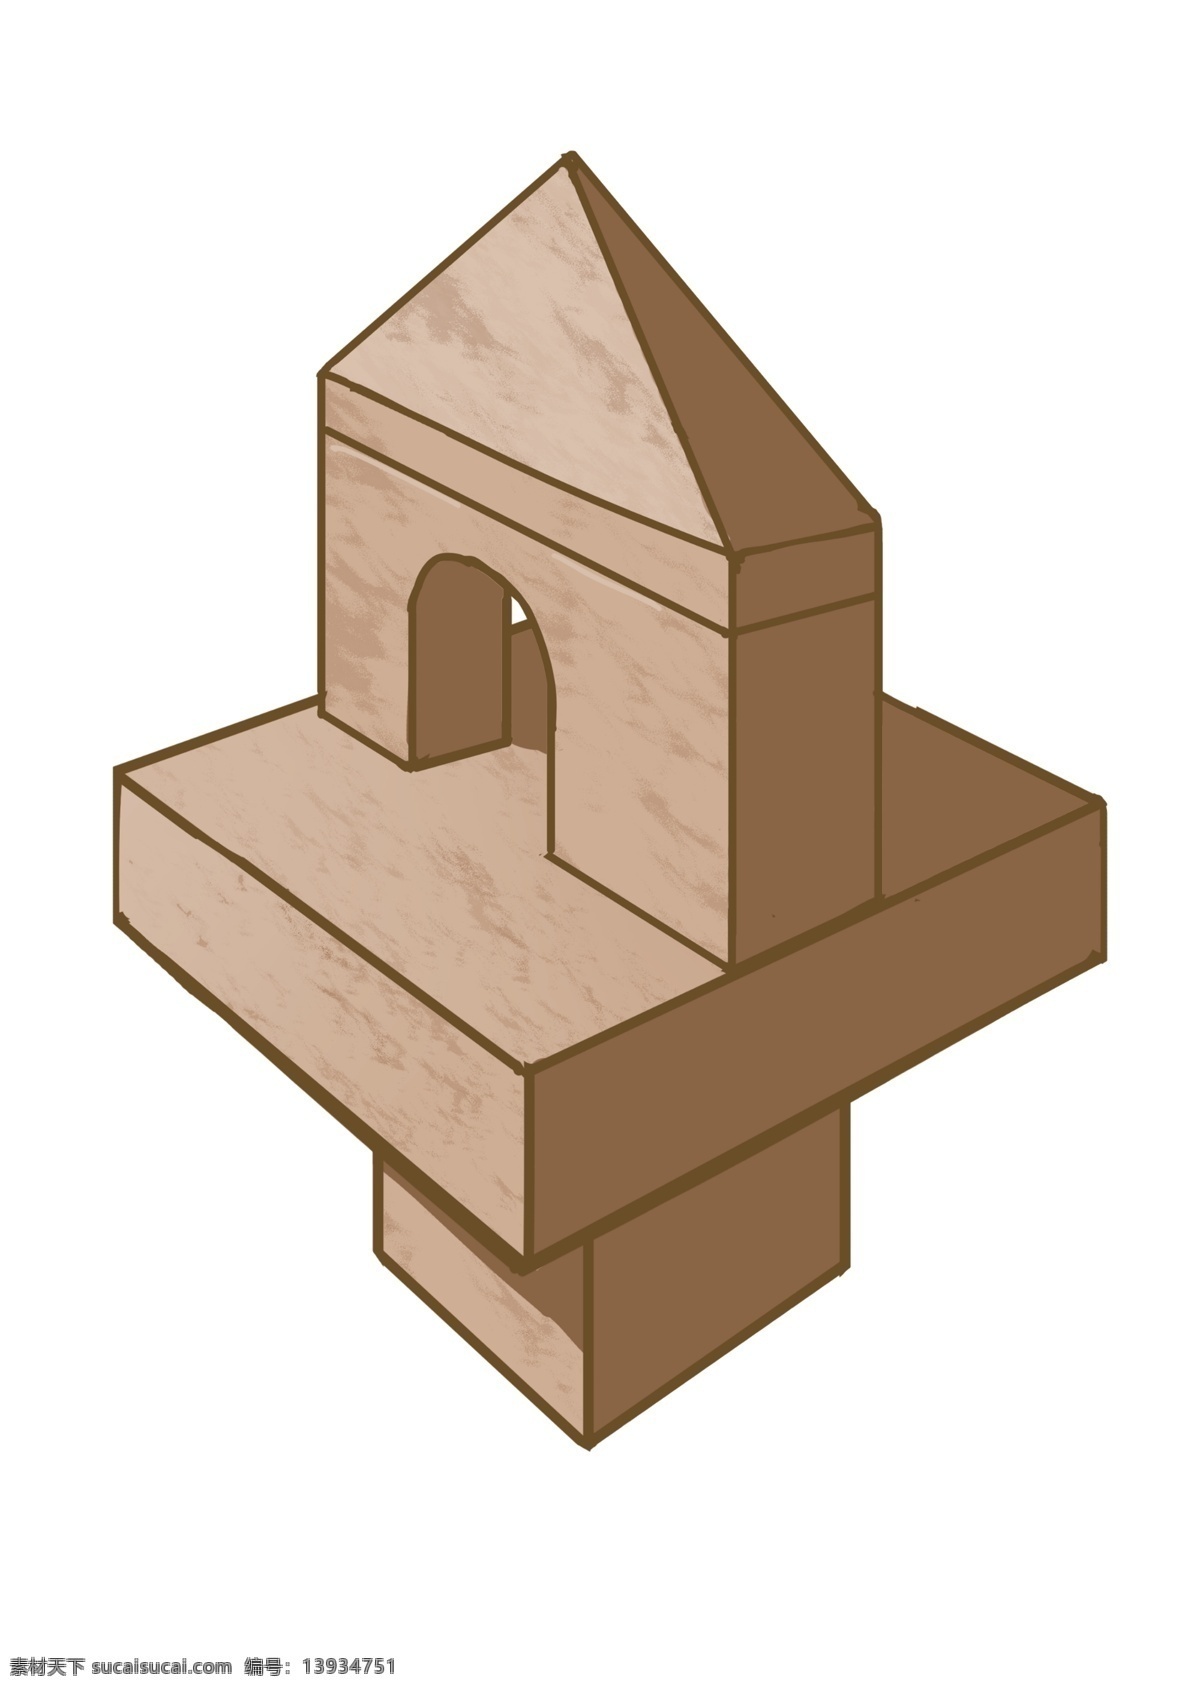 建筑 木质 卡通 插画 漂亮的木质 卡通插画 木质插画 木头 木块 木材 木料 木质产品 建筑的木质